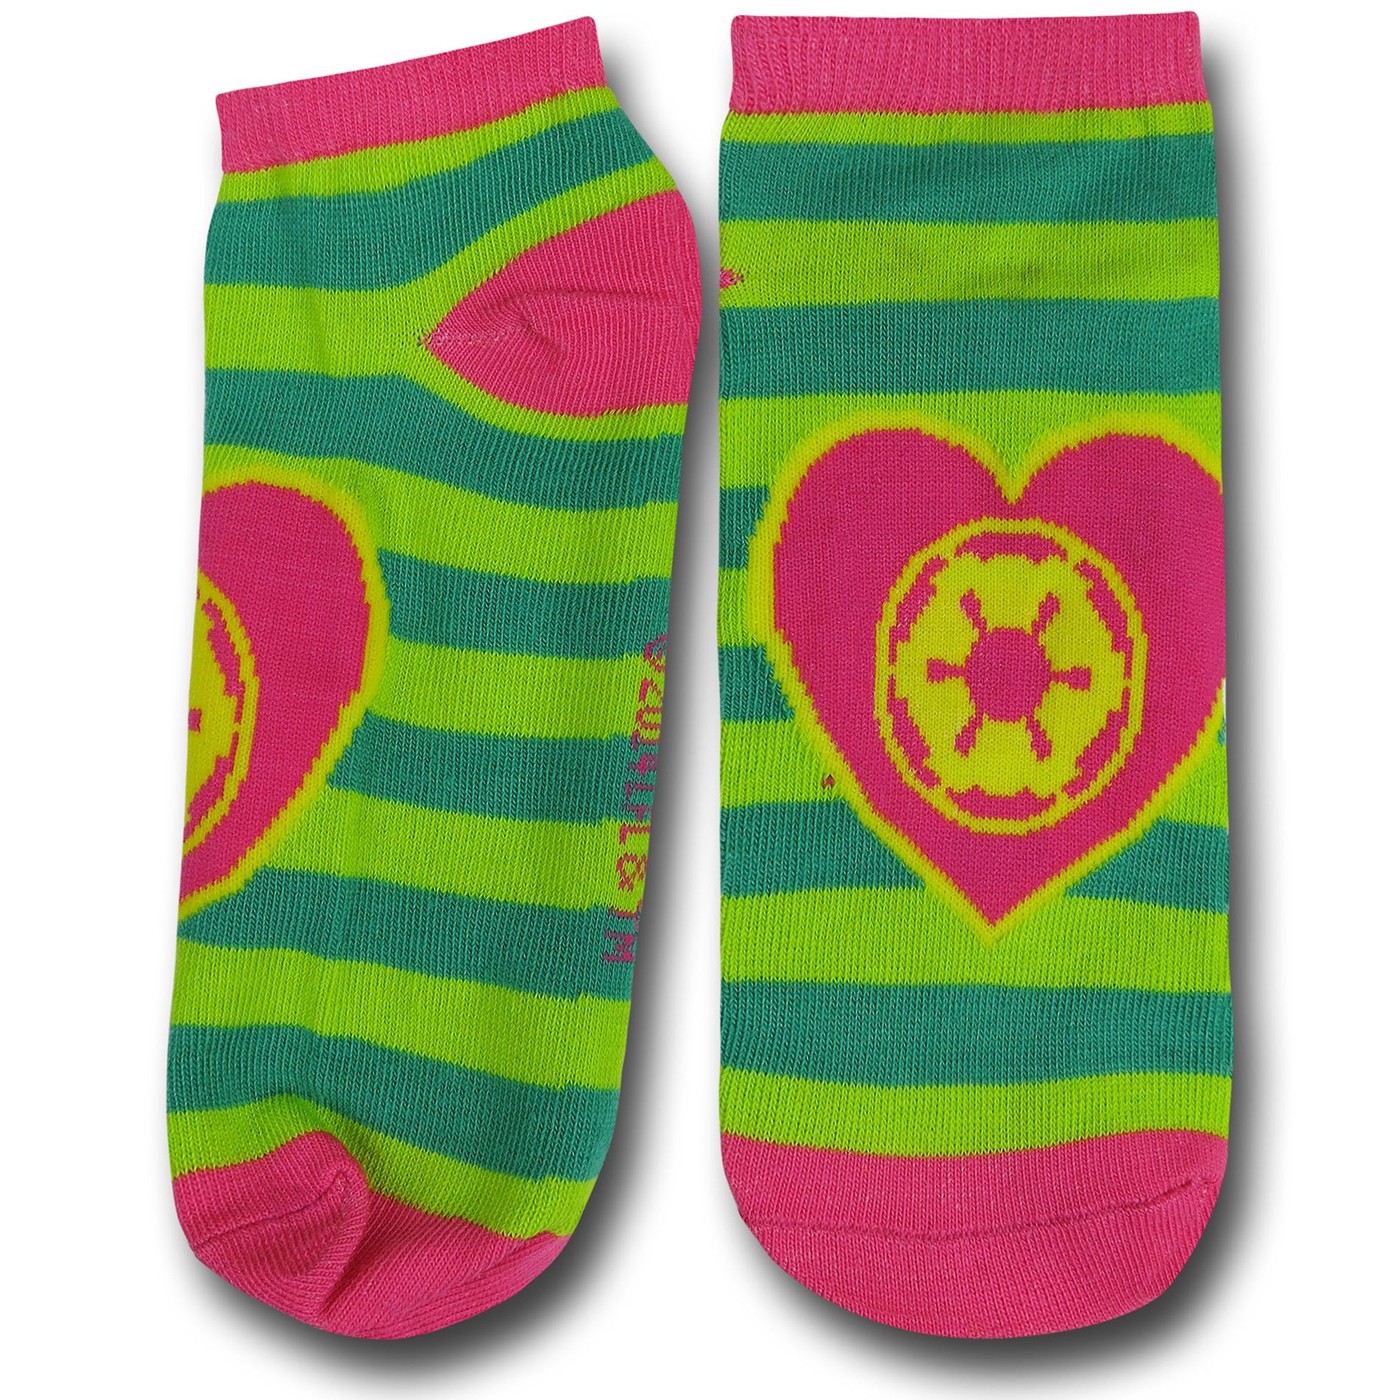 Star Wars Women's Socks 5-Pack